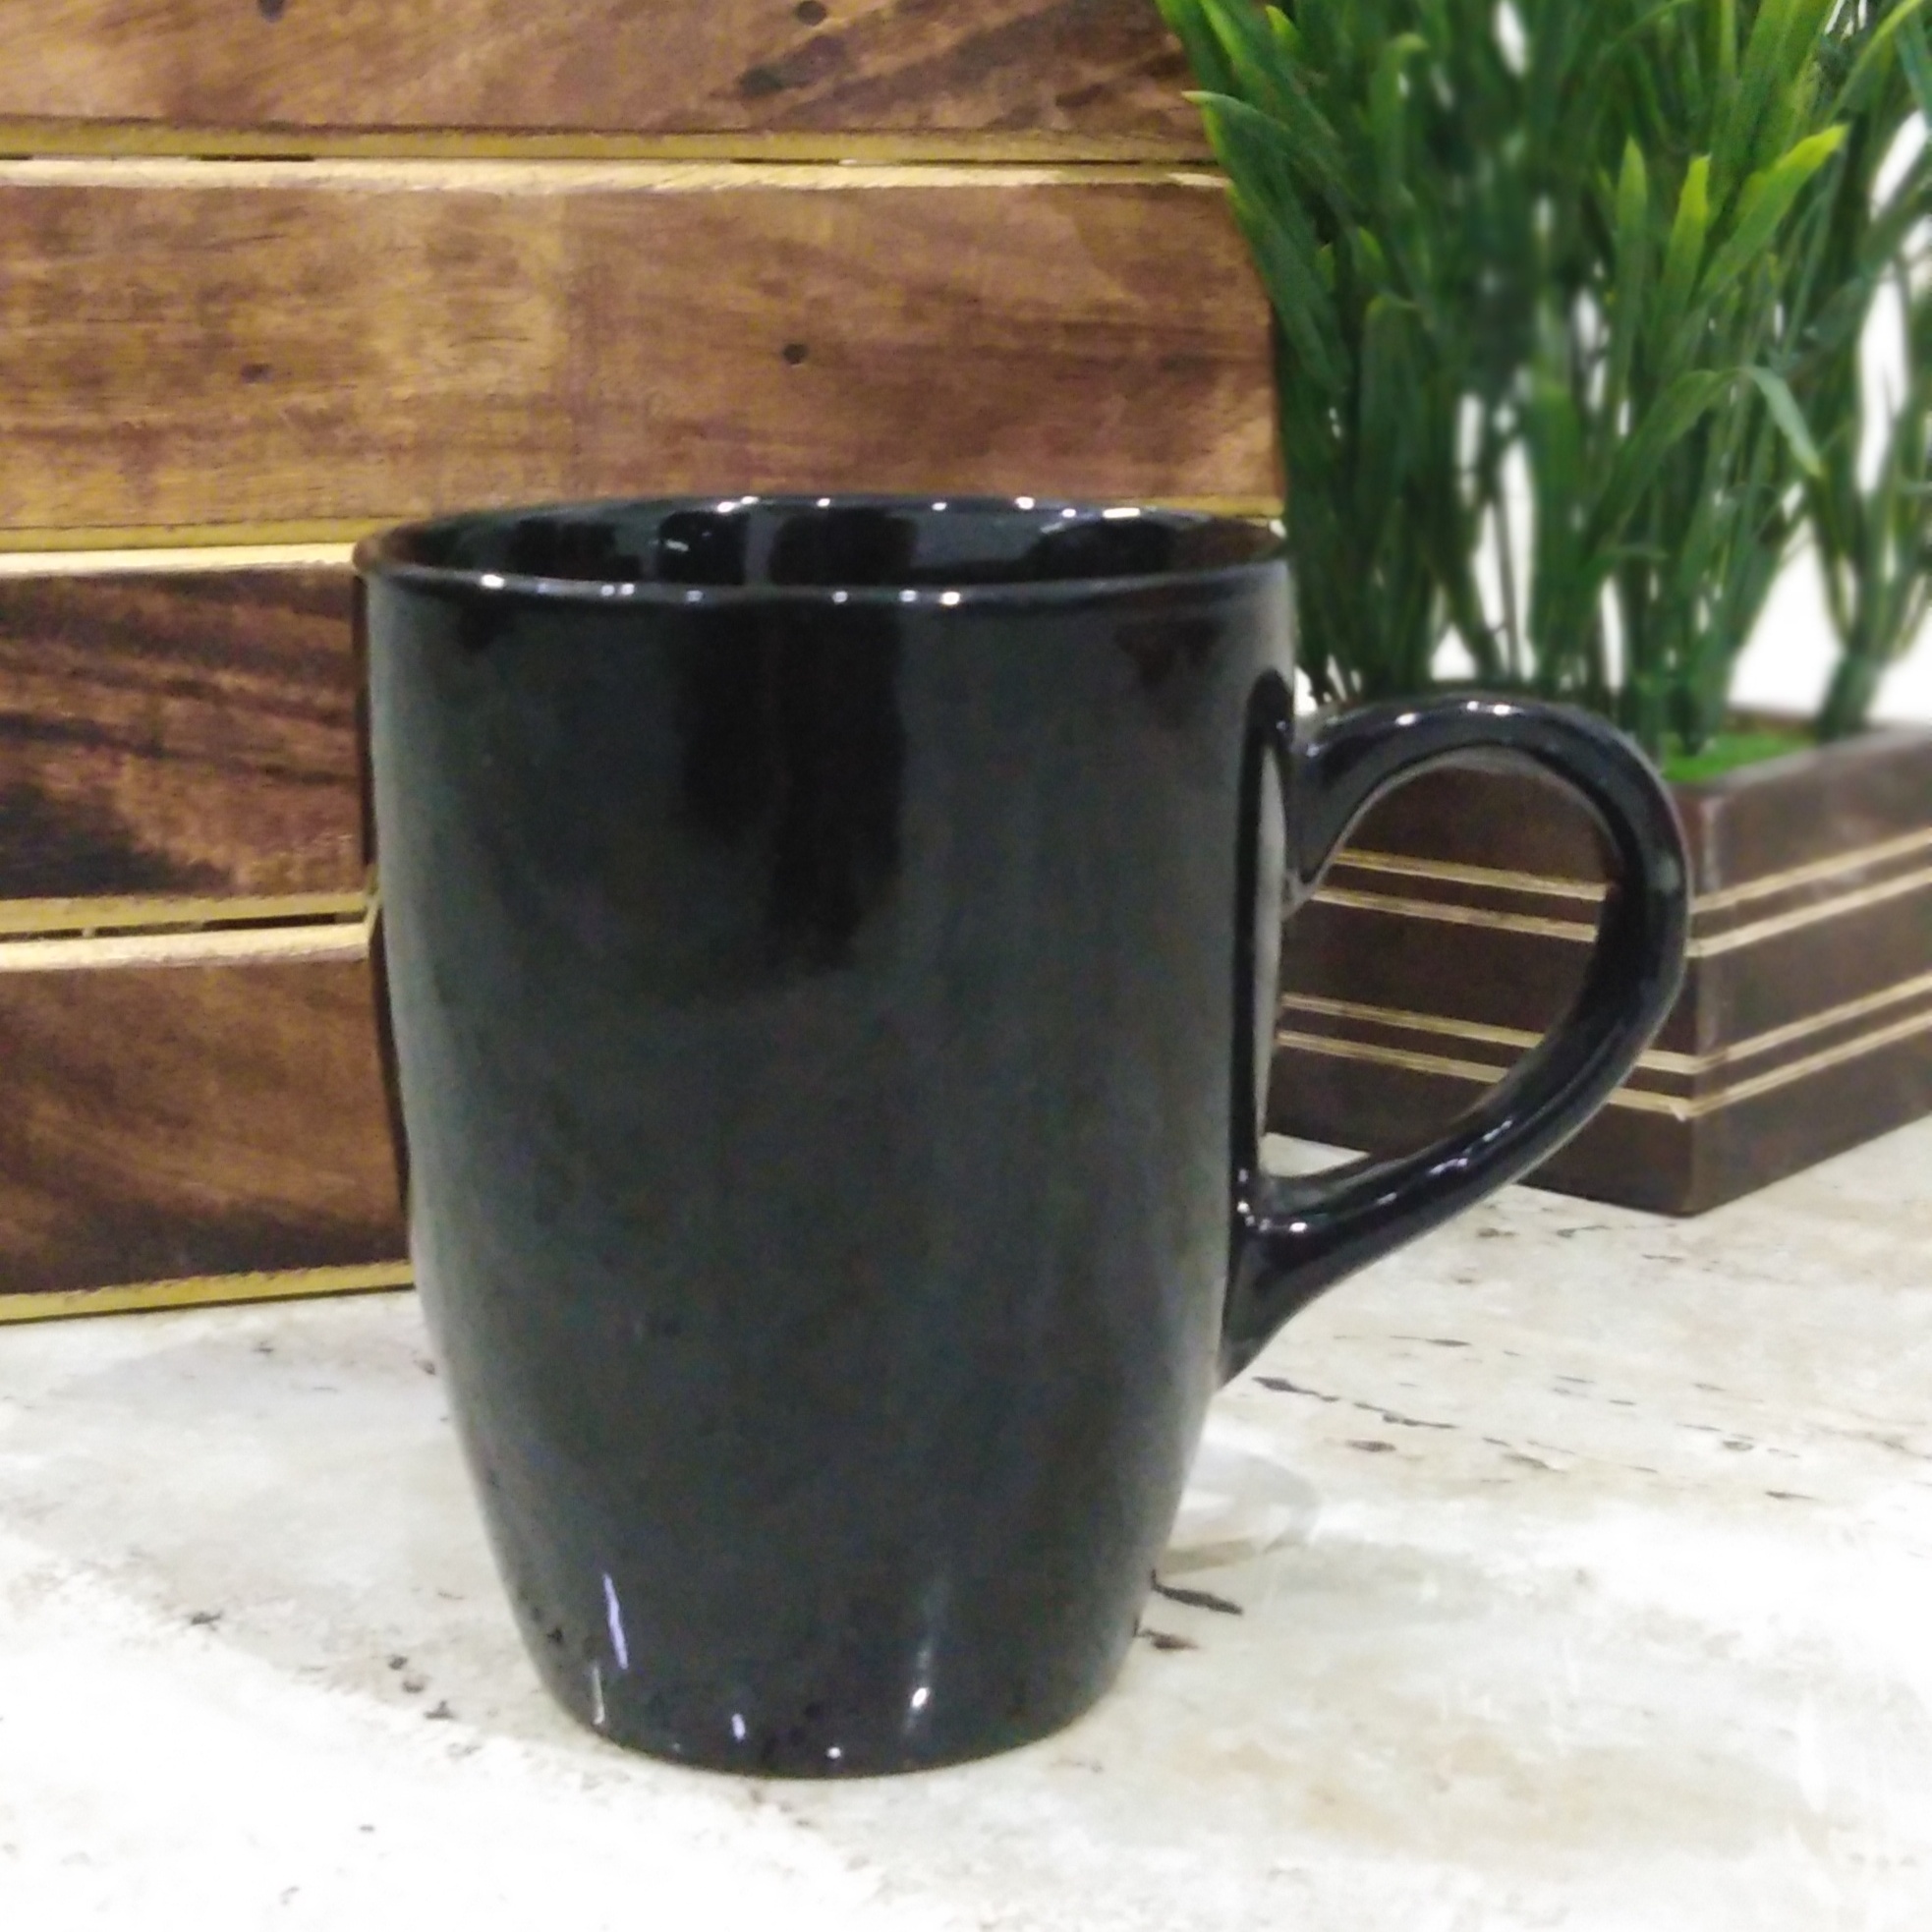 Plain black coffee mug